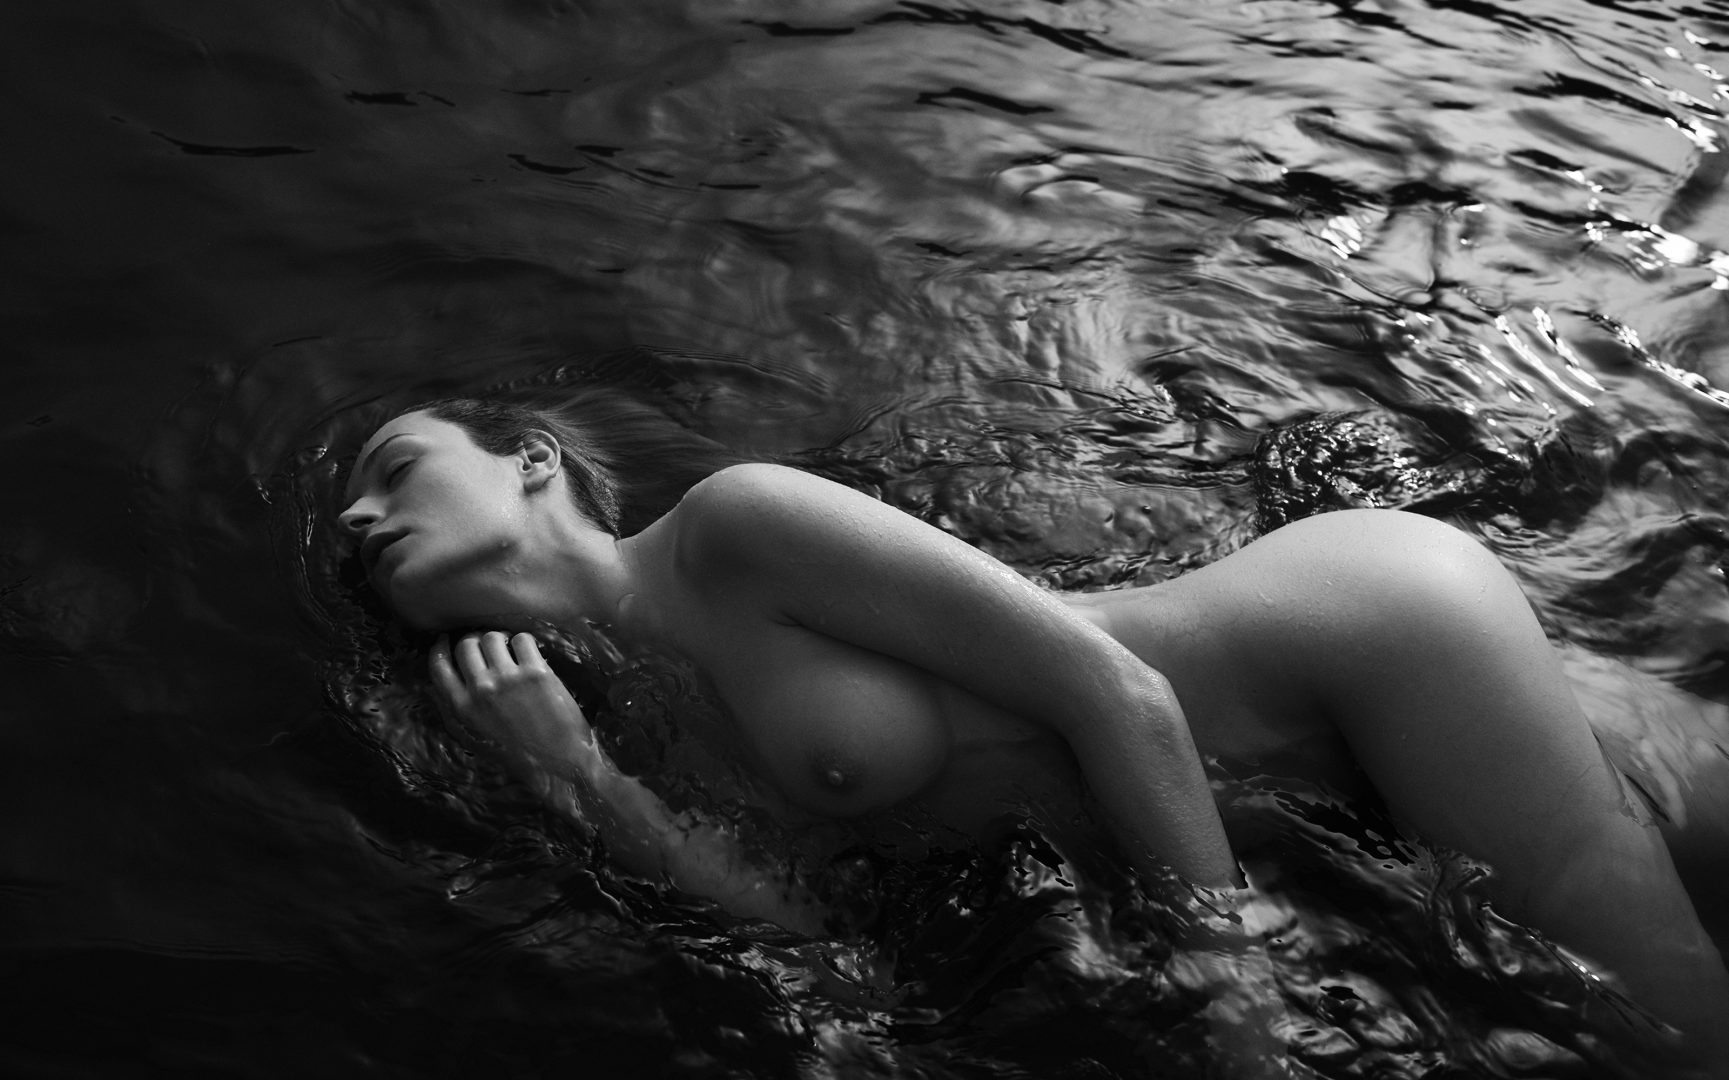 Naked girl merging in water by Stefan Rappo